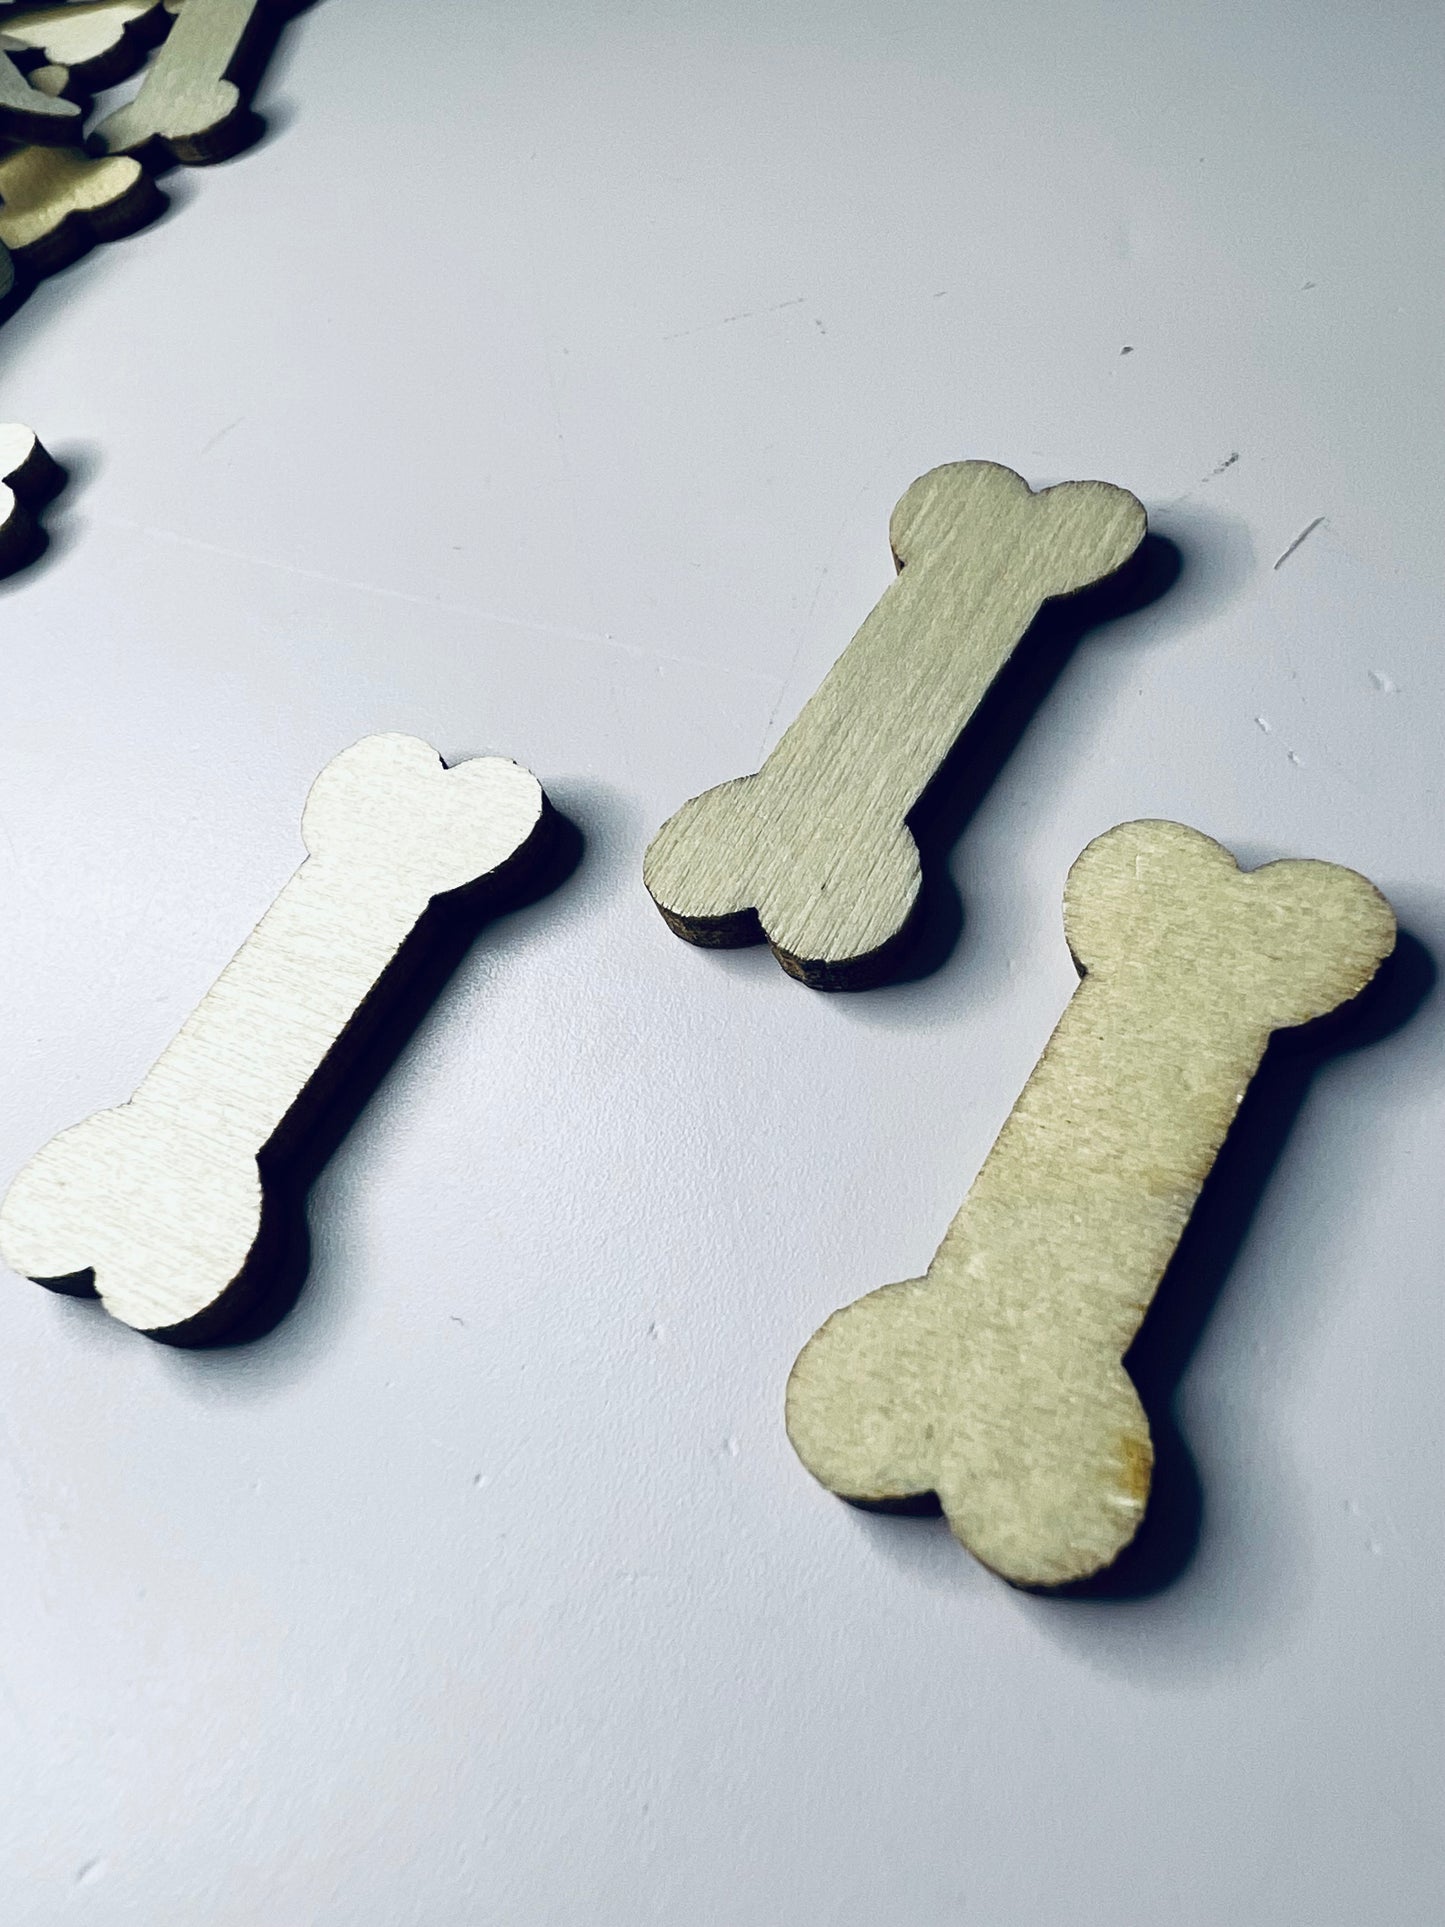 Wood Cut Dog Bones Miniature Dog Bone Trinkets Wood Cut Objects Mini Objects Speech Therapy Dollhouse Miniature Dog Bones